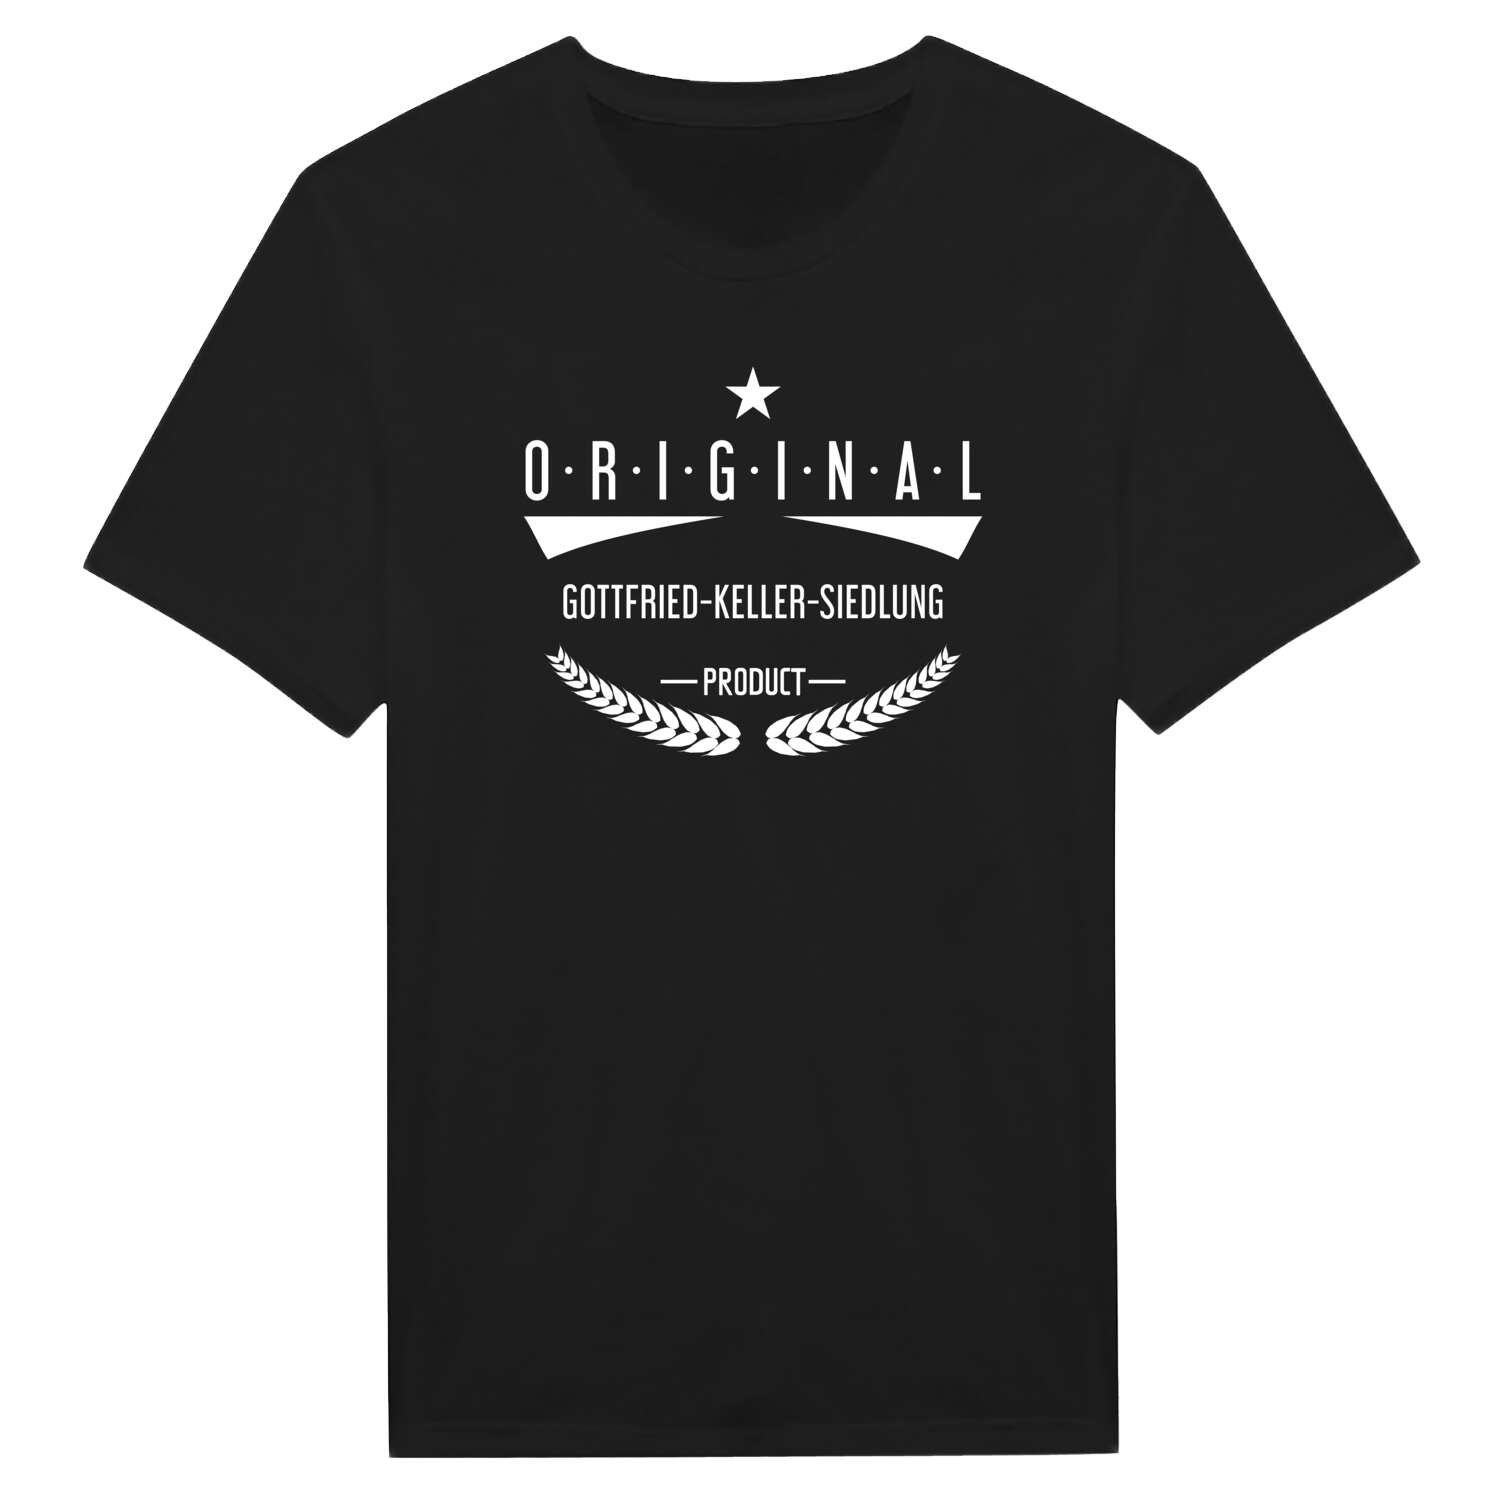 Gottfried-Keller-Siedlung T-Shirt »Original Product«